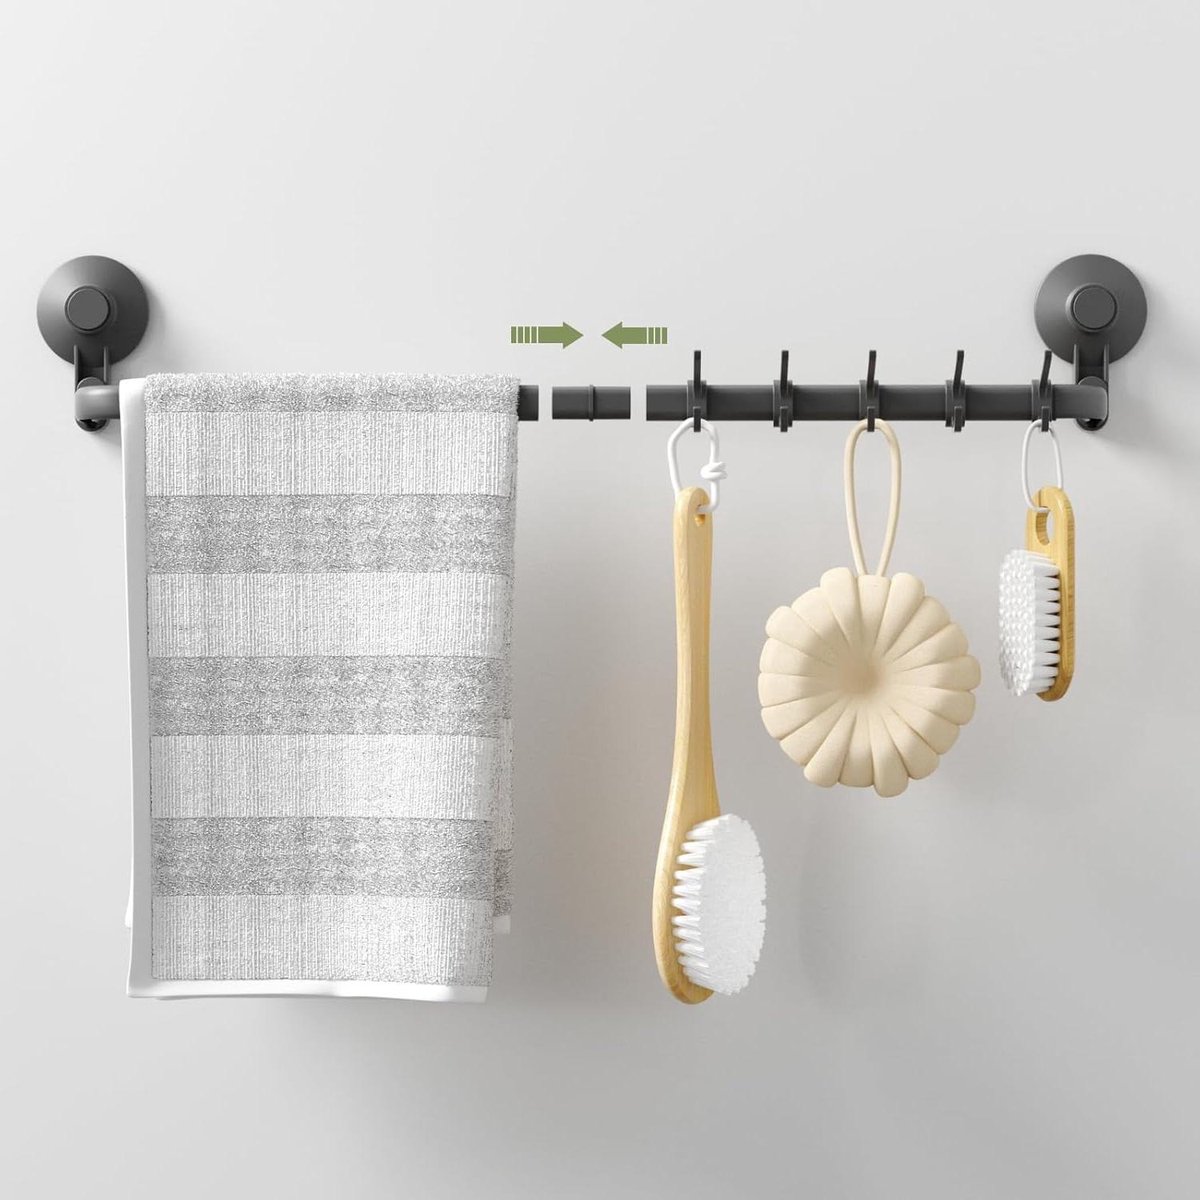 Handdoekrek 60 cm/30 cm 10 kg - Wandmontage zonder boren - Grijs - voor Badkamer Keuken Douche handdoekenrek